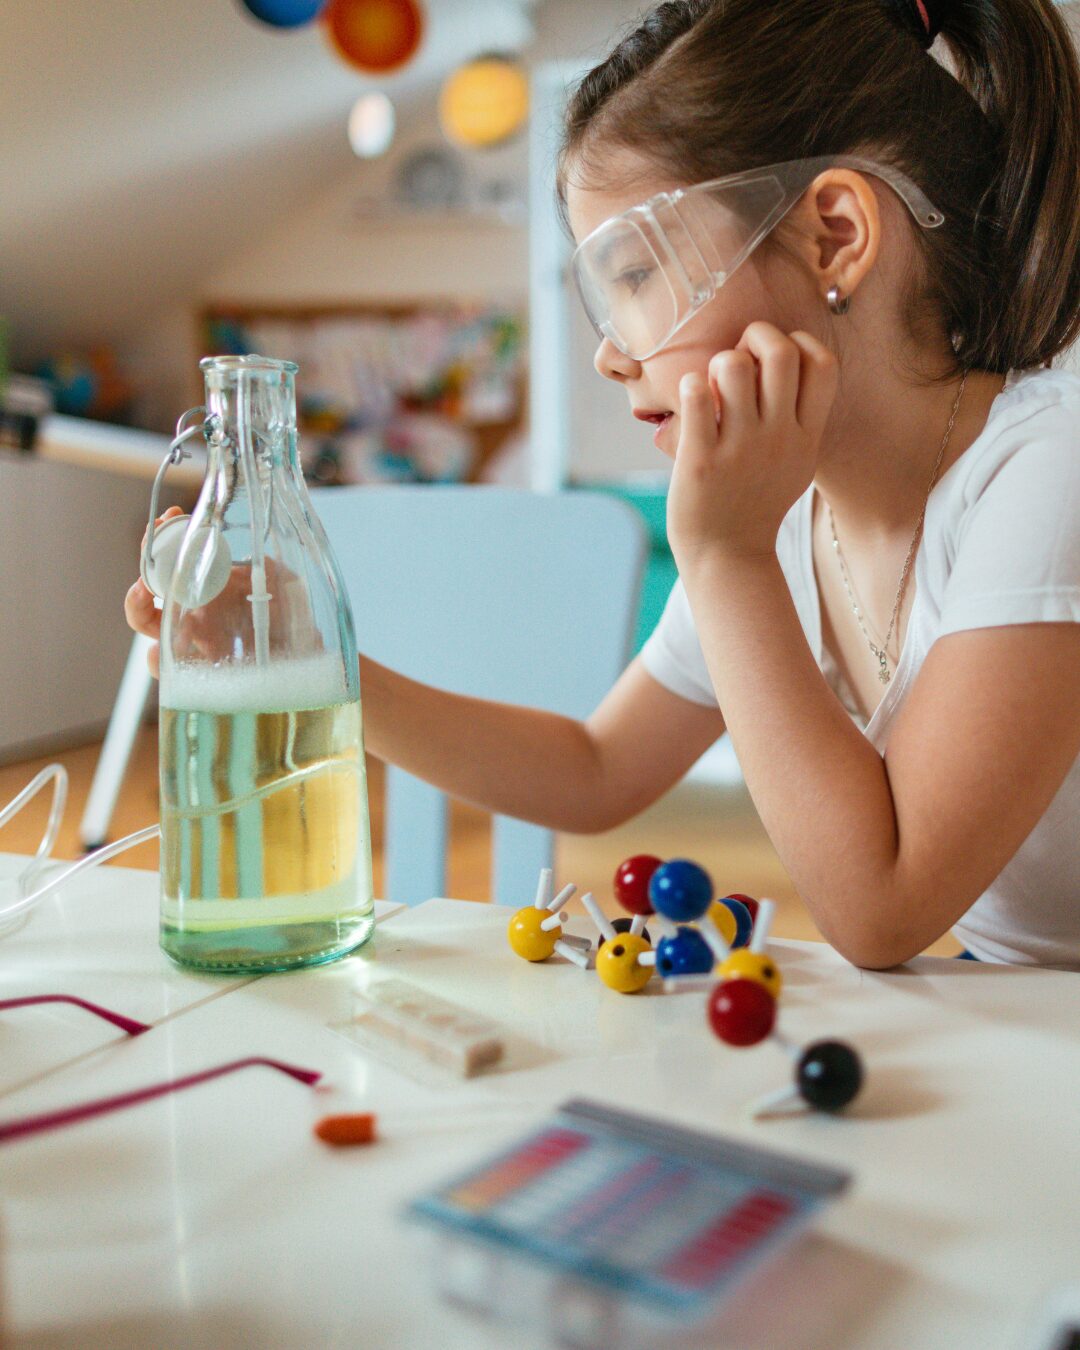 Marista Lab: Como incentivar o pensamento científico nas crianças?